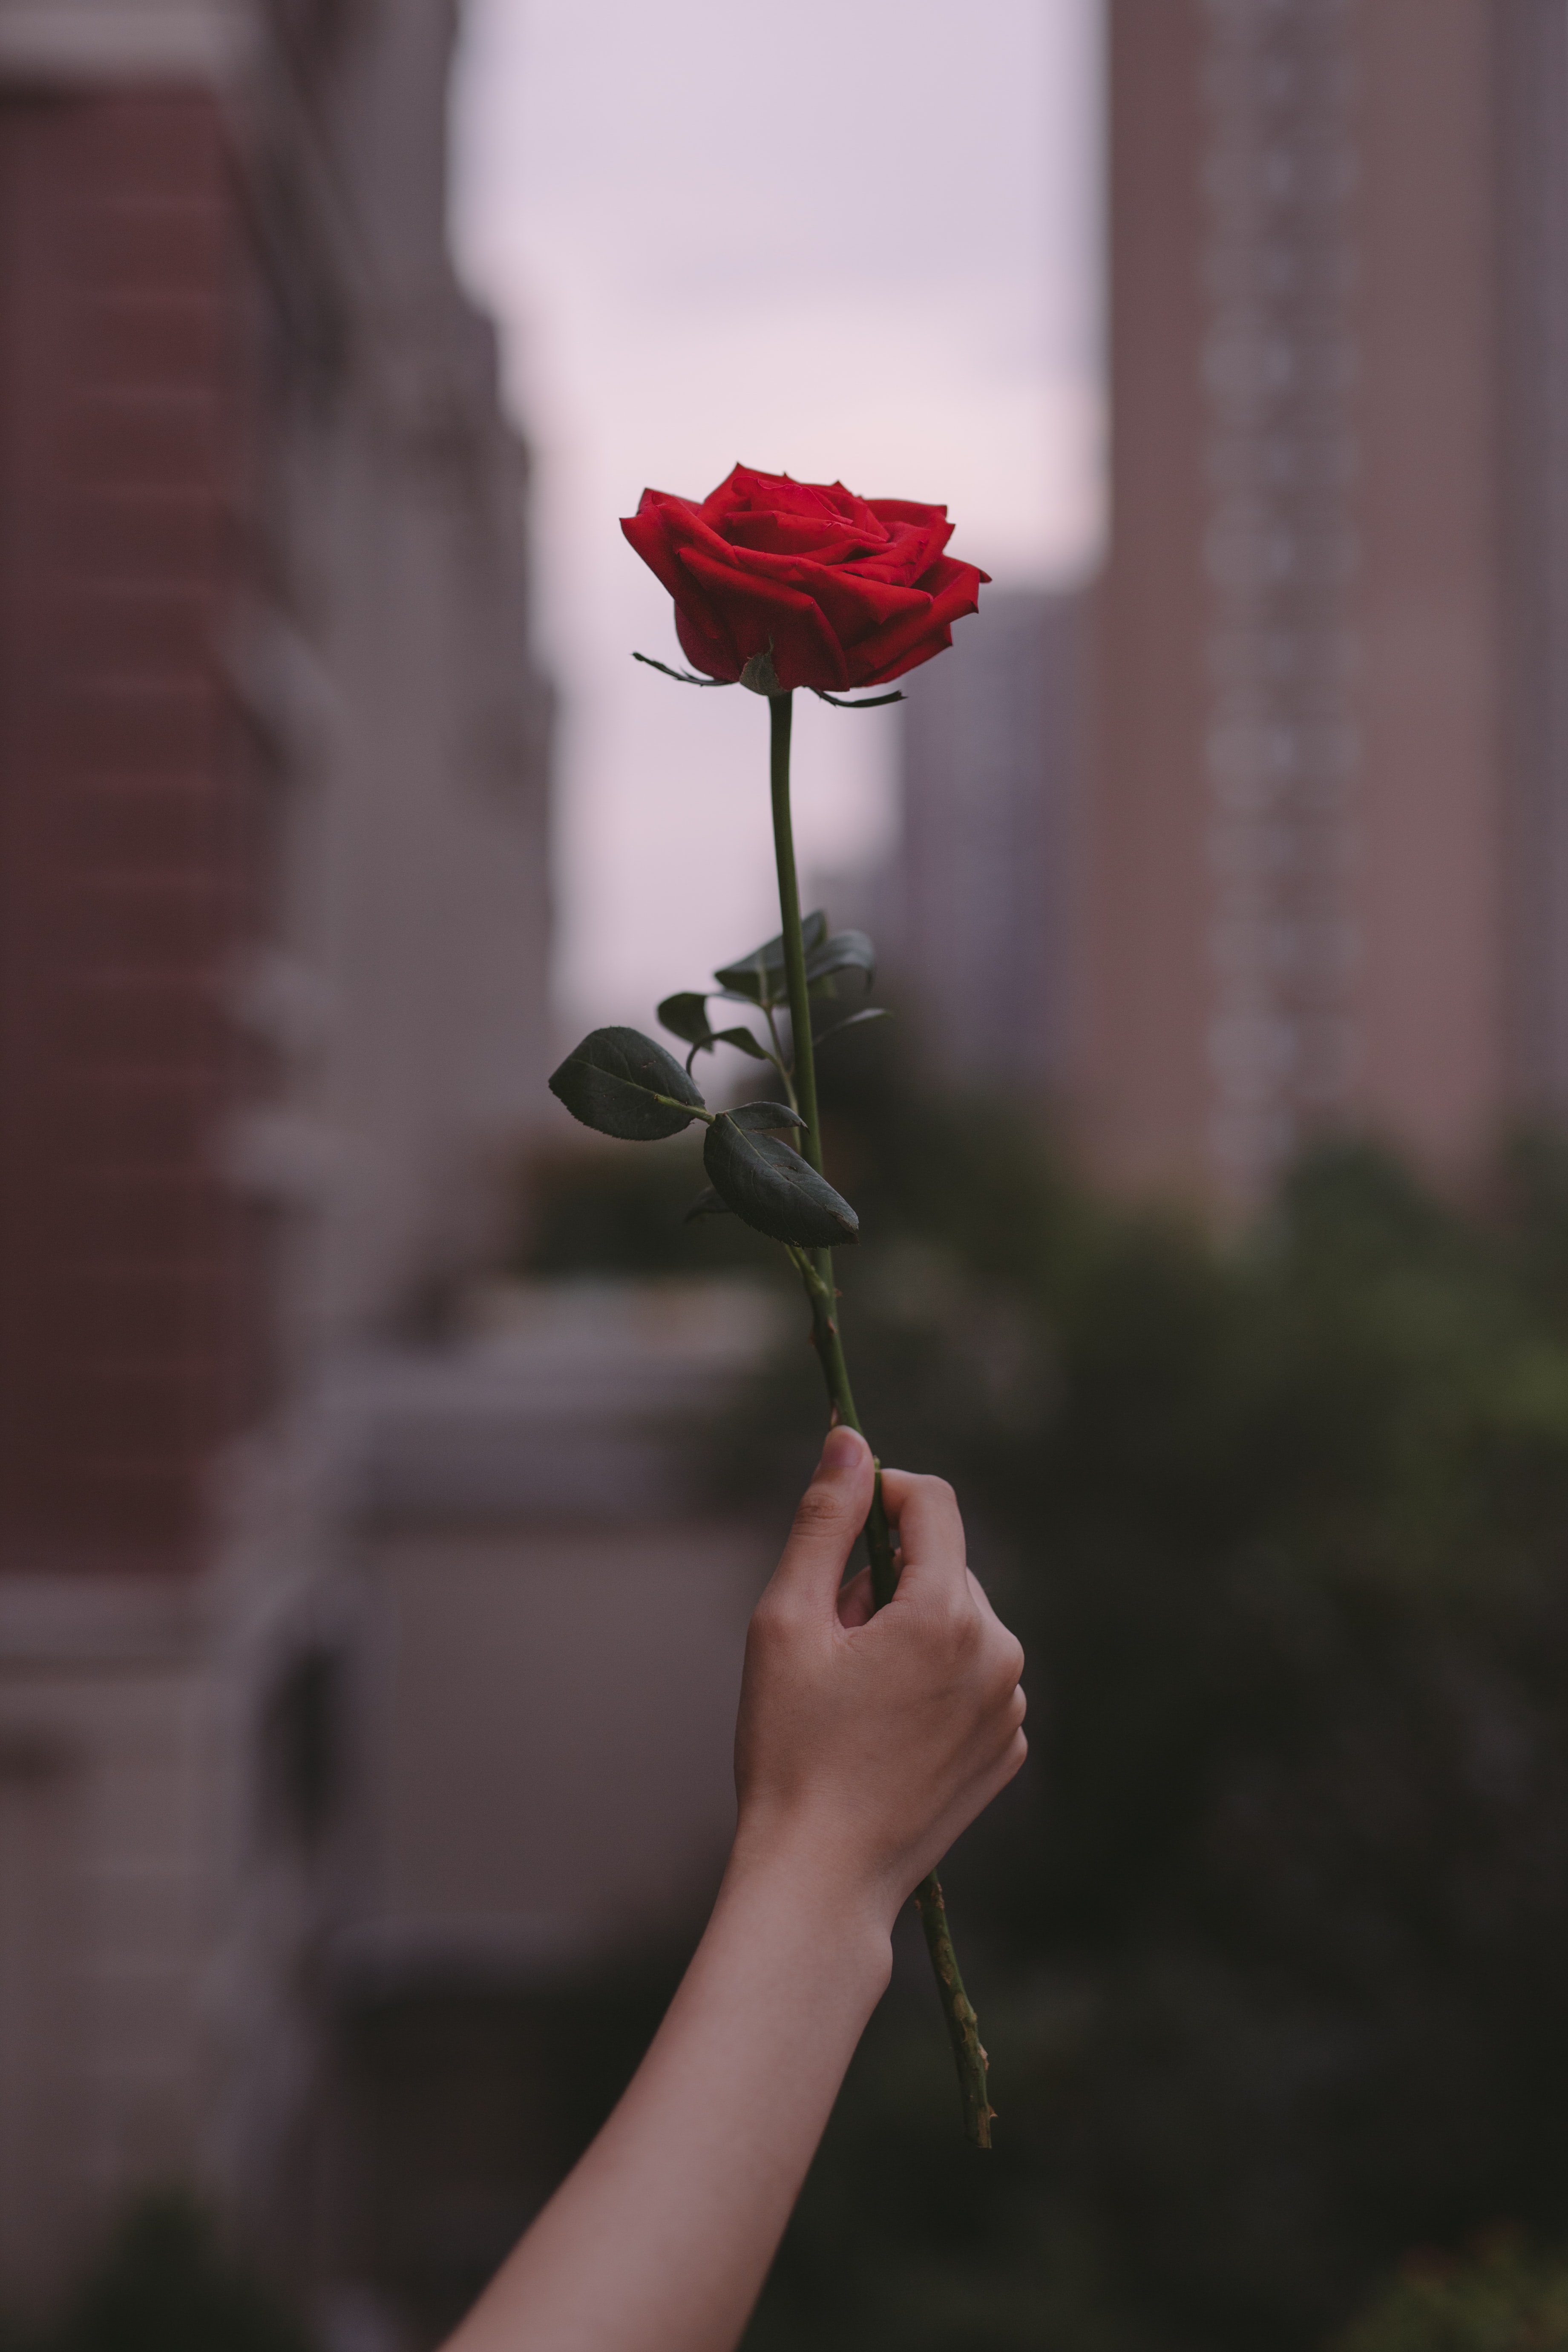 8k Rose Flower Images